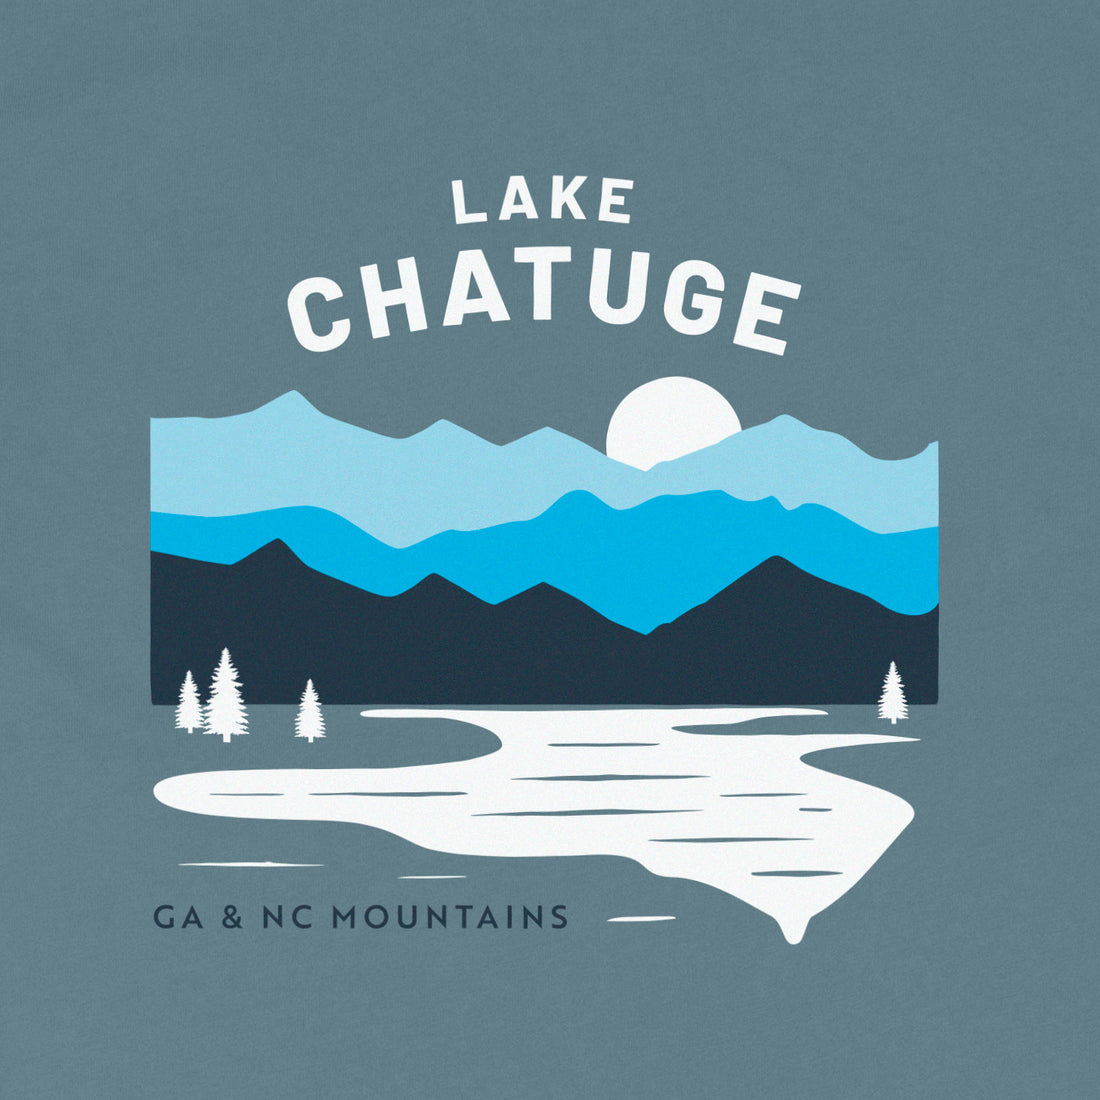 Trailful Lake Chatuge Shirt - Slate